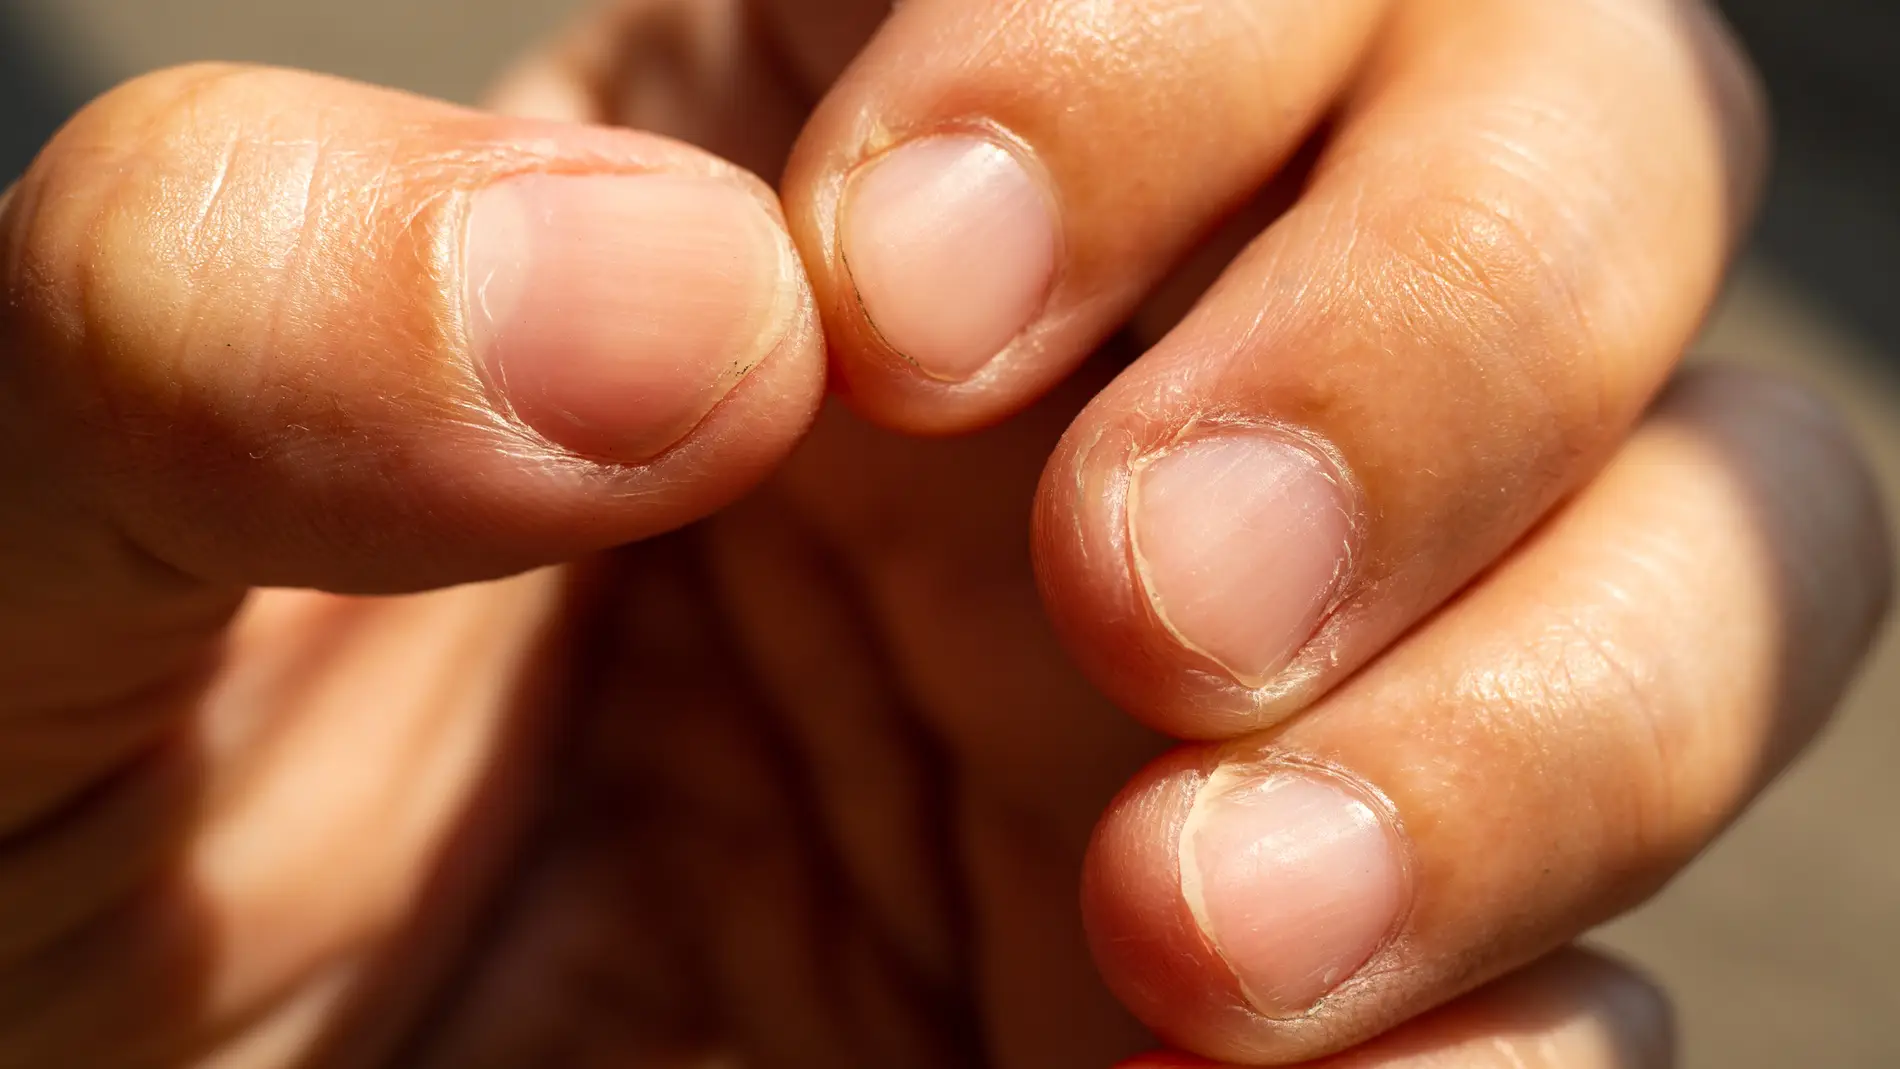 Morderte las uñas puede poner en peligro tu salud